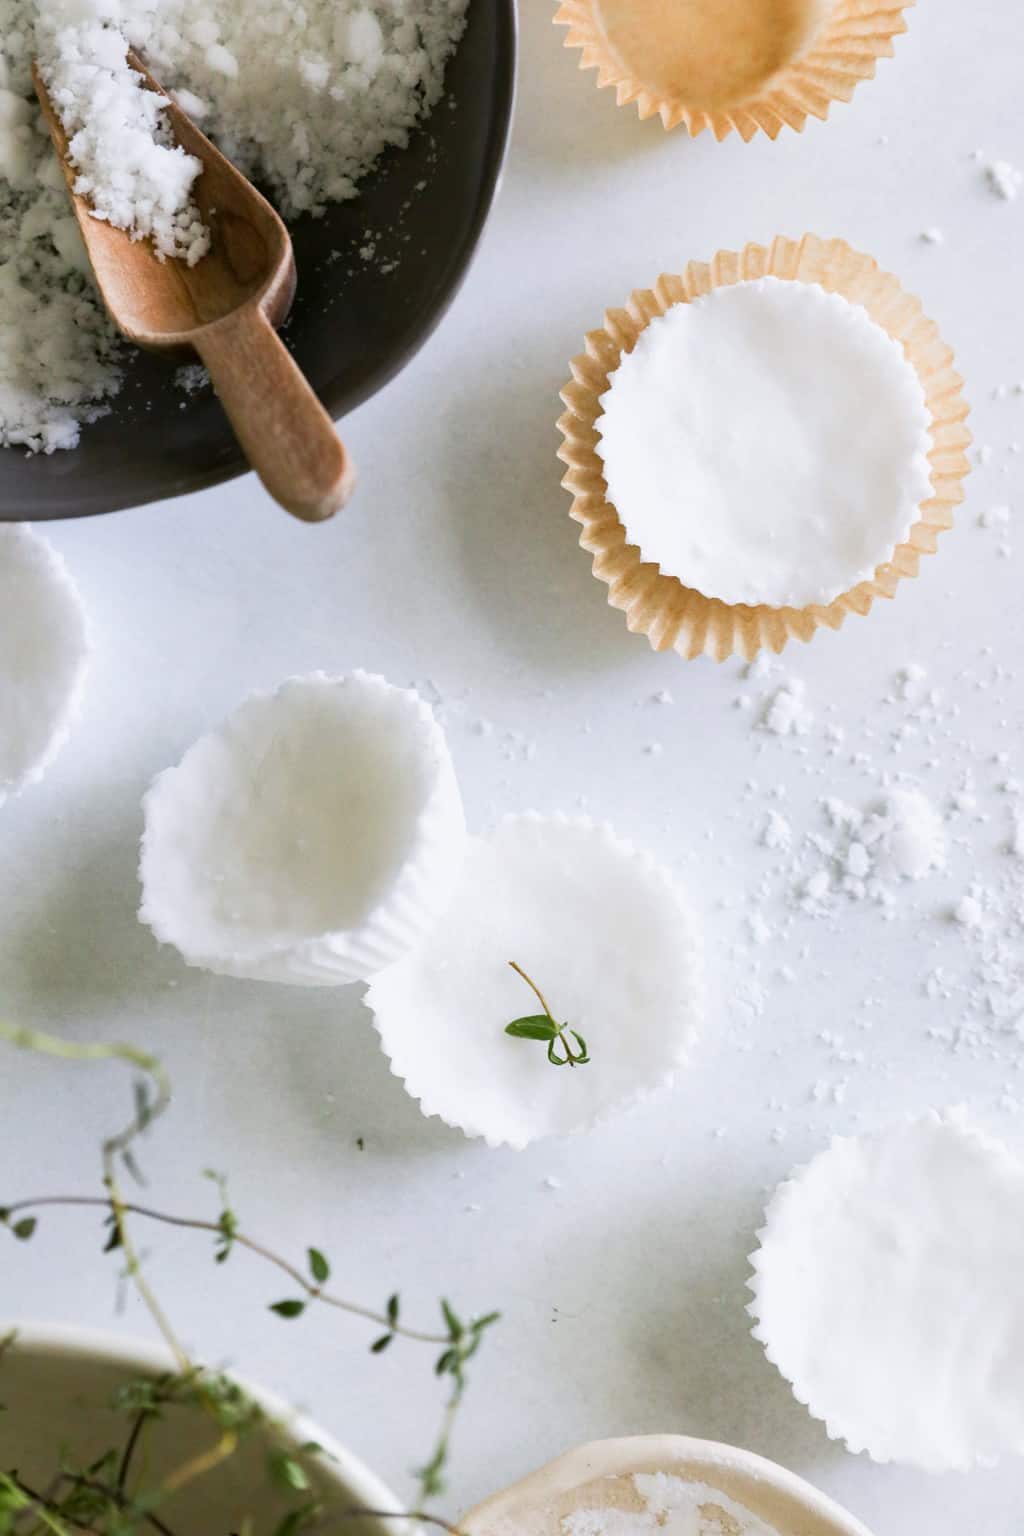 Vous voulez fabriquer des boules de bain sans acide citrique ?  C'est possible!  Utilisez simplement de la crème de tartre, que vous pouvez trouver dans n'importe quelle épicerie.